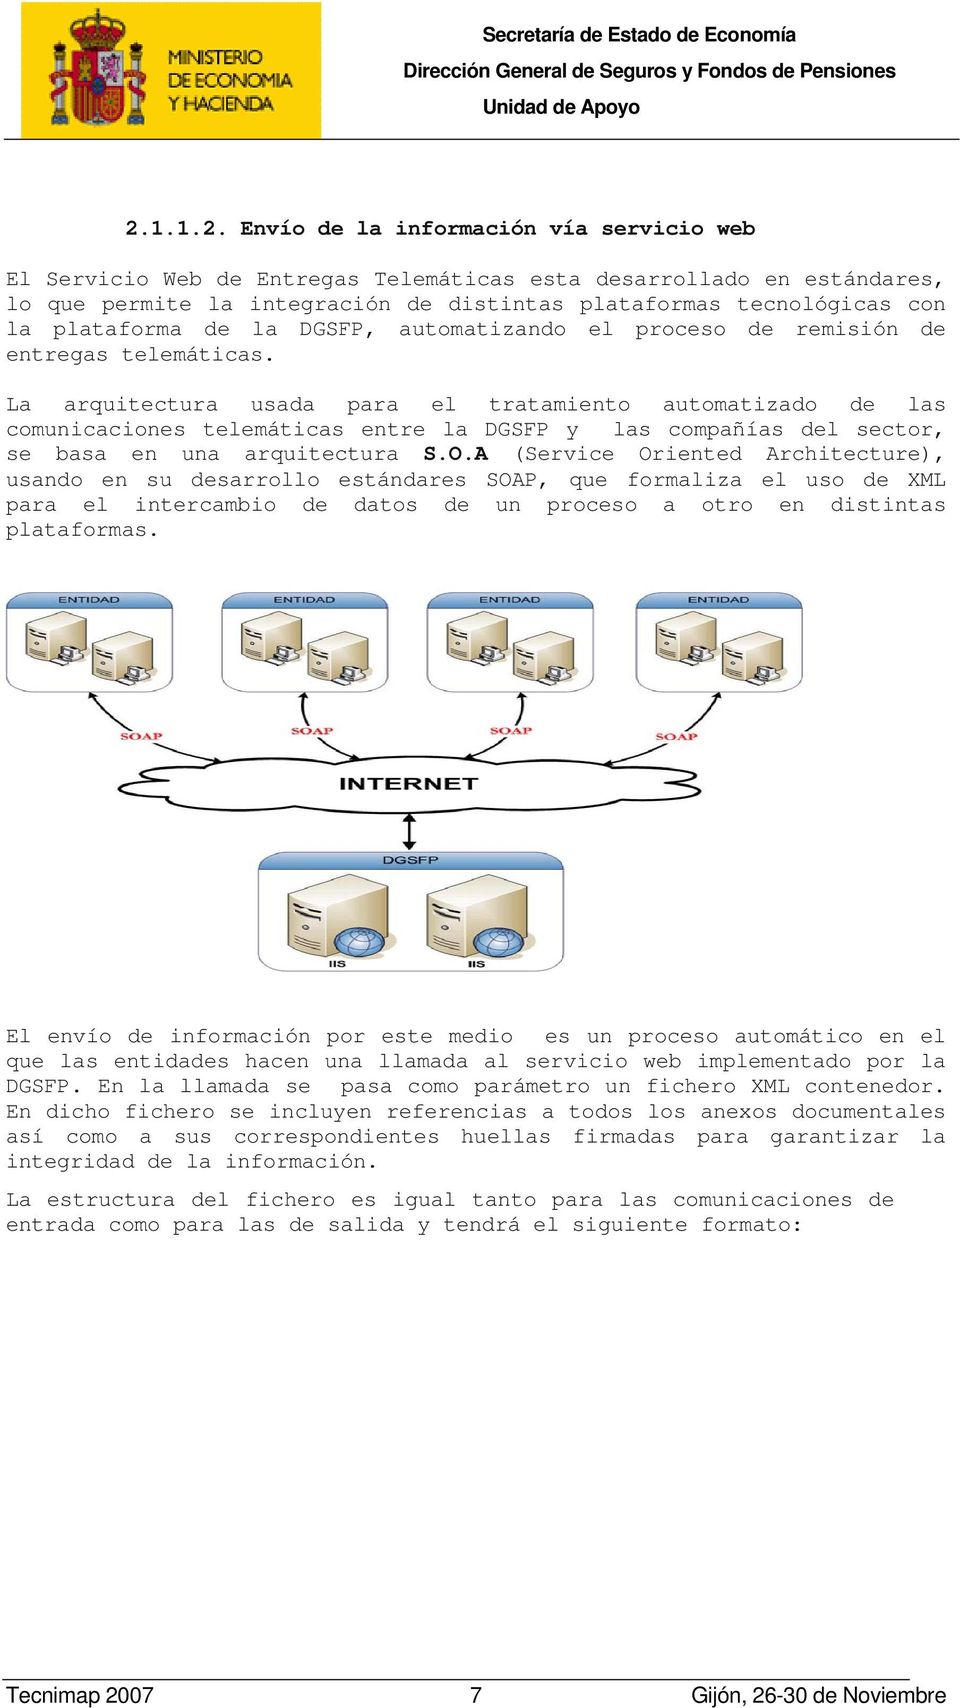 La arquitectura usada para el tratamiento automatizado de las comunicaciones telemáticas entre la DGSFP y las compañías del sector, se basa en una arquitectura S.O.